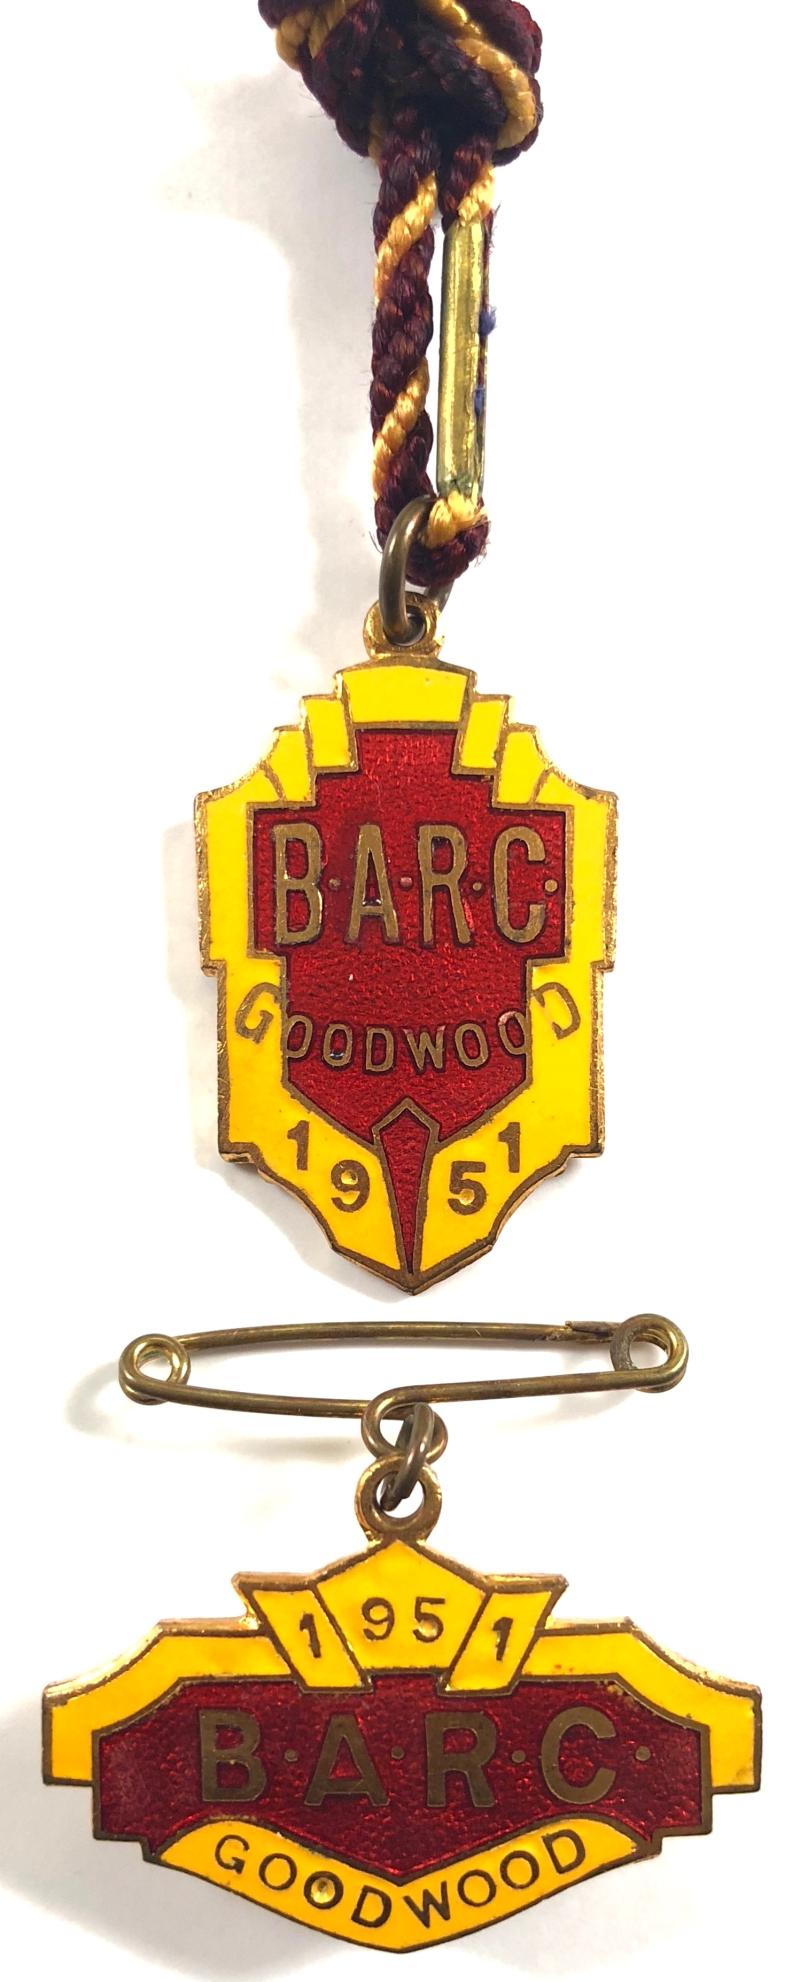 1951 Goodwood BARC membership badge & guest